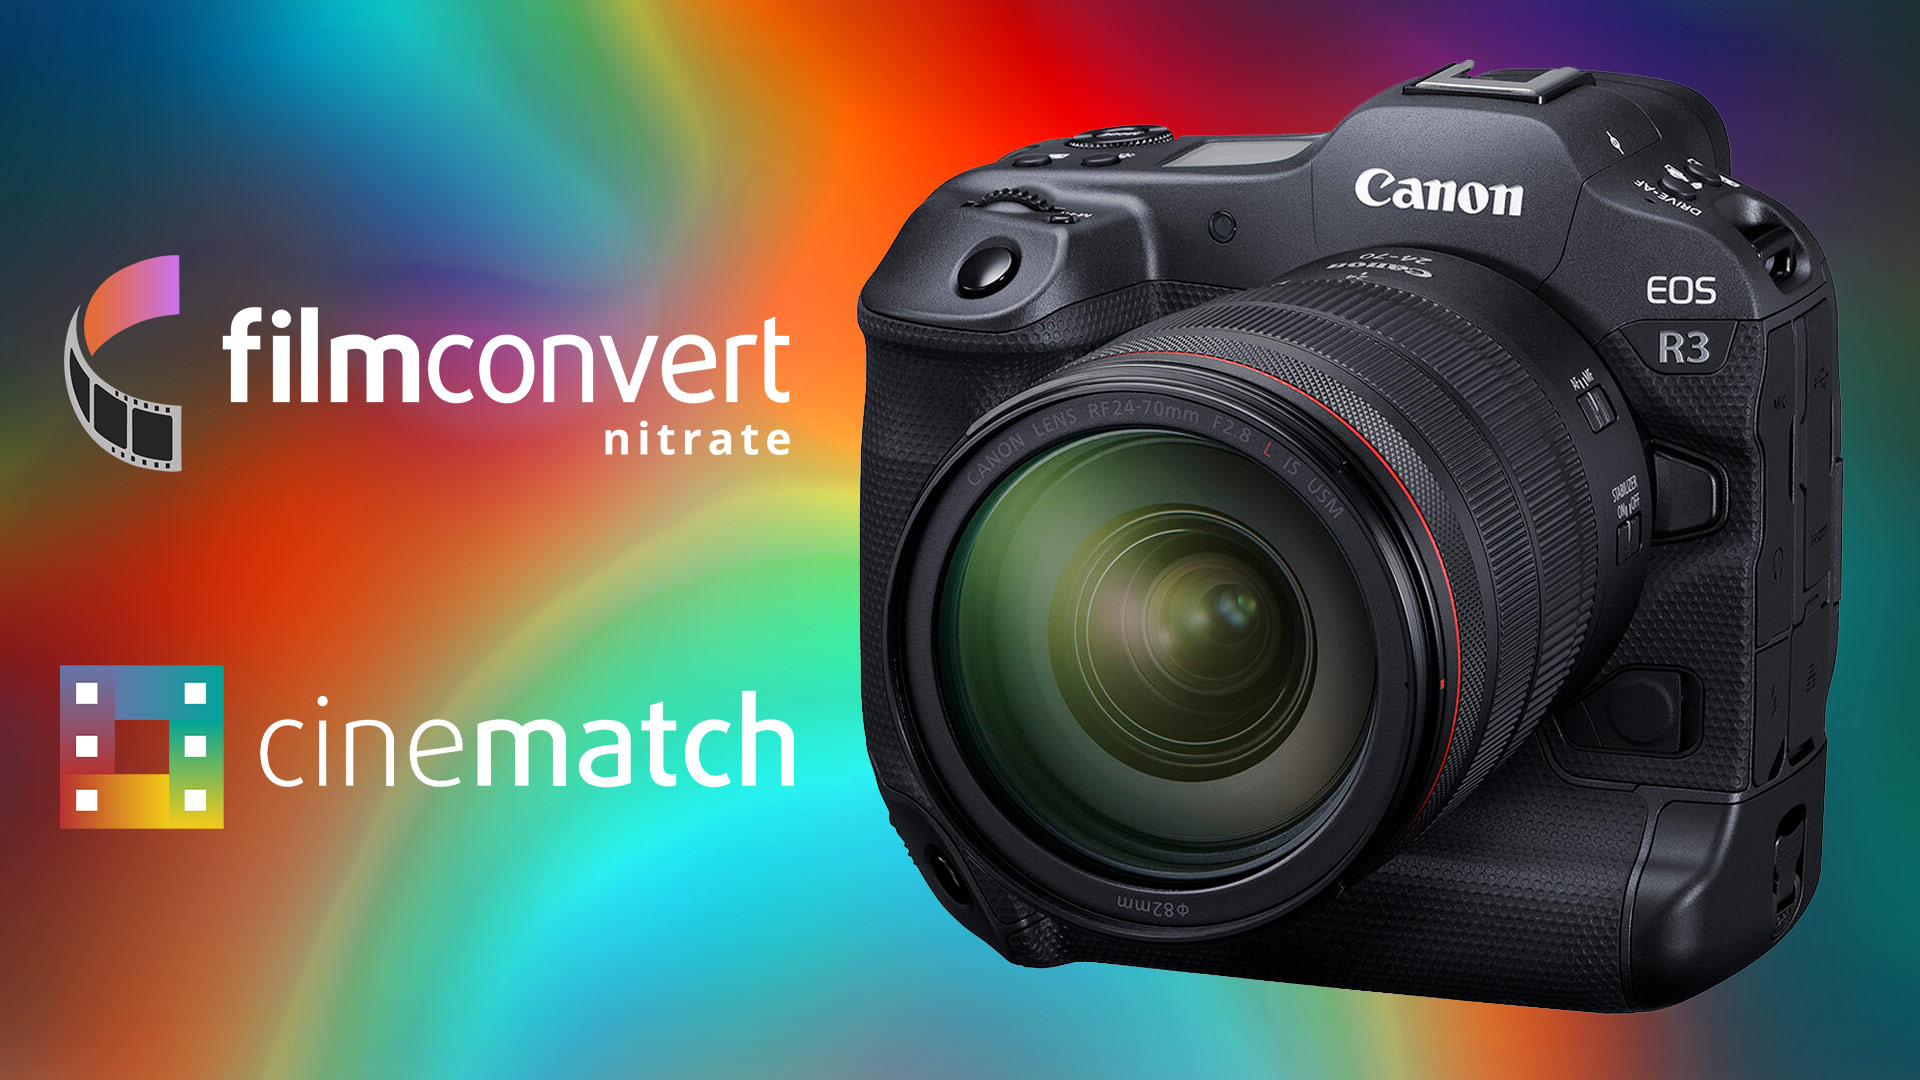 FilmConvert Nitrate e CineMatch sono ora supportati su Canon EOS R3